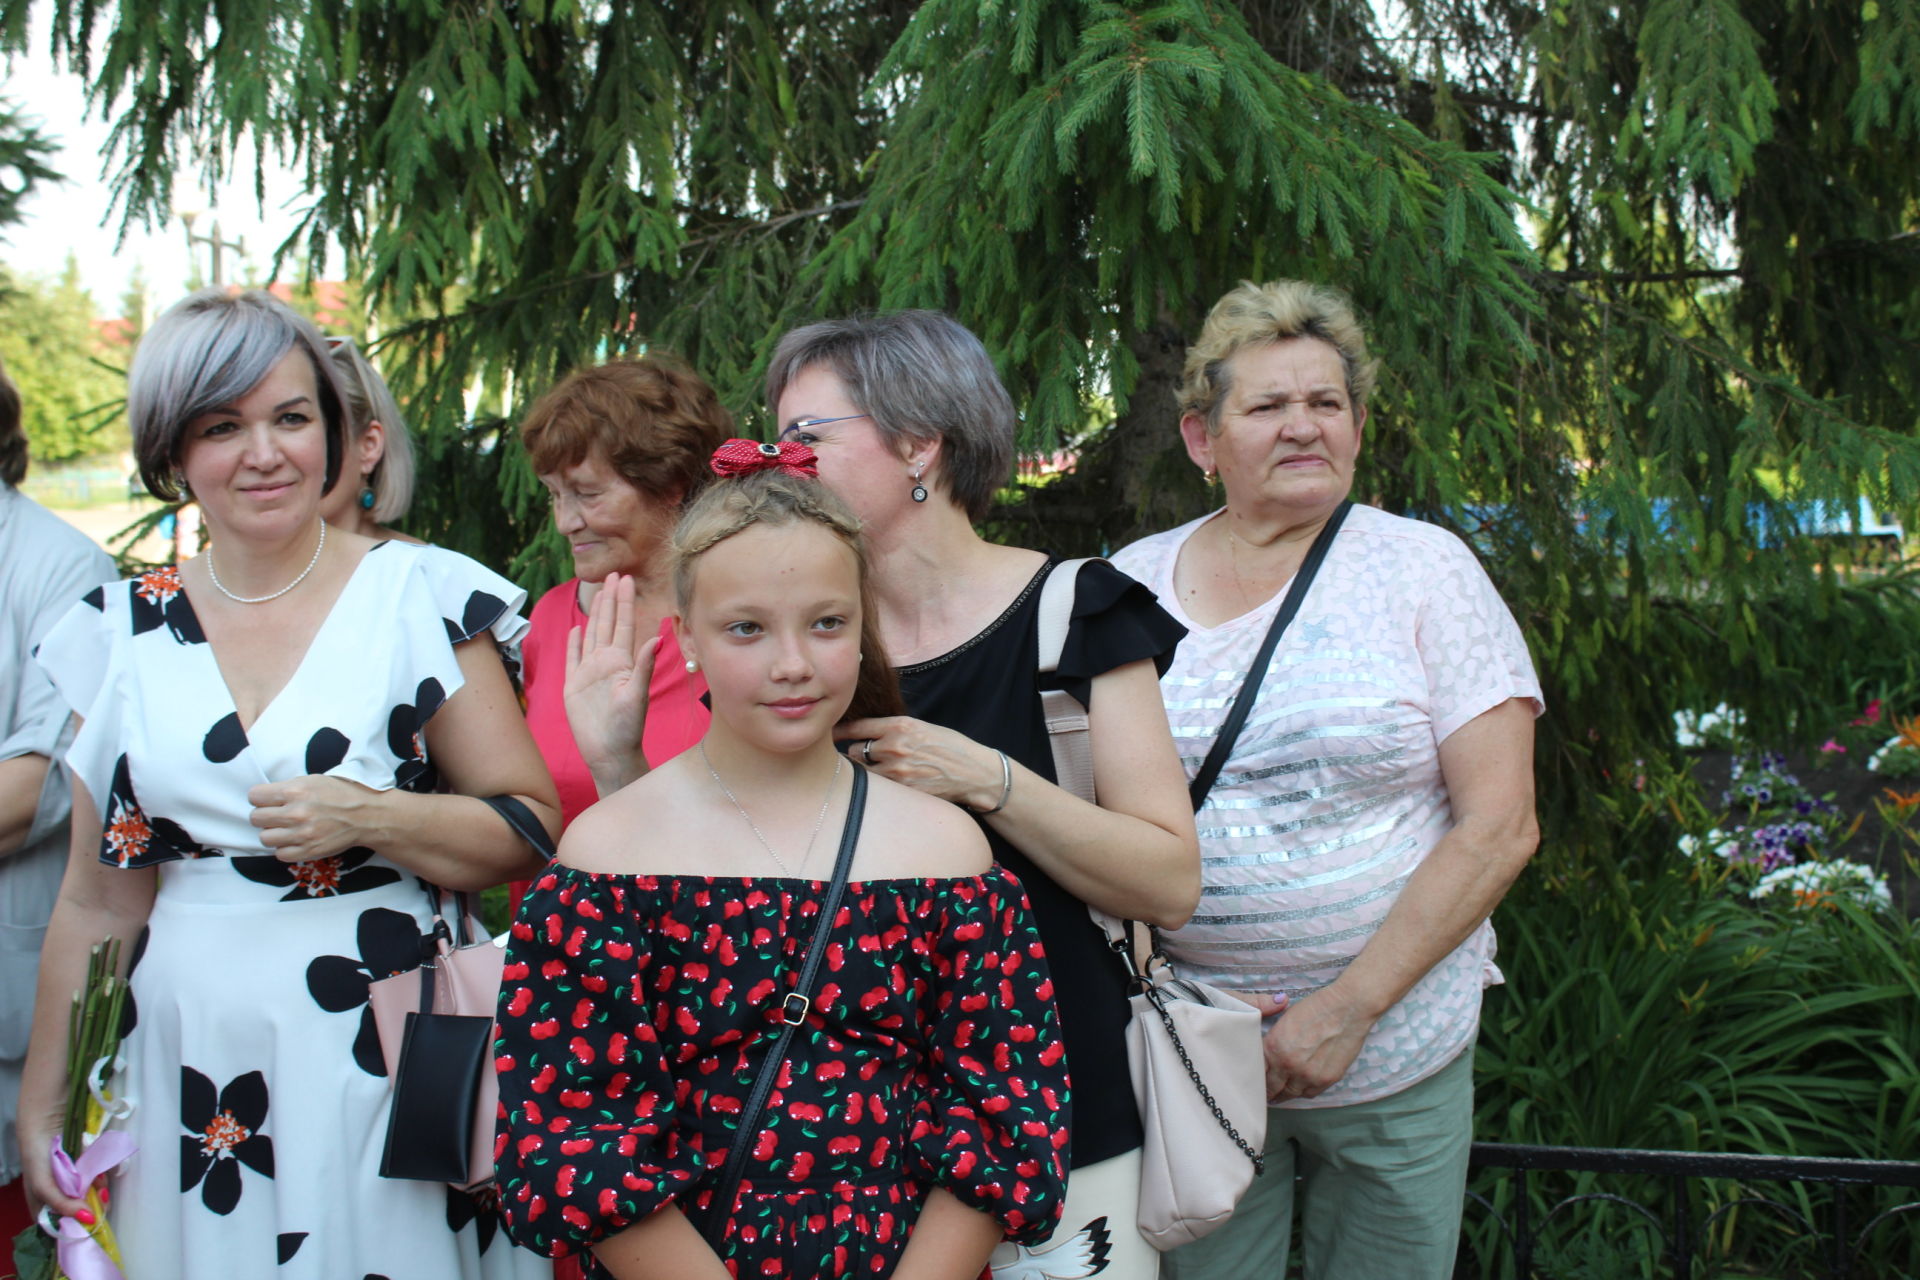 25 июня в Новошешминске прошел районный выпускной бал (фоторепортаж)